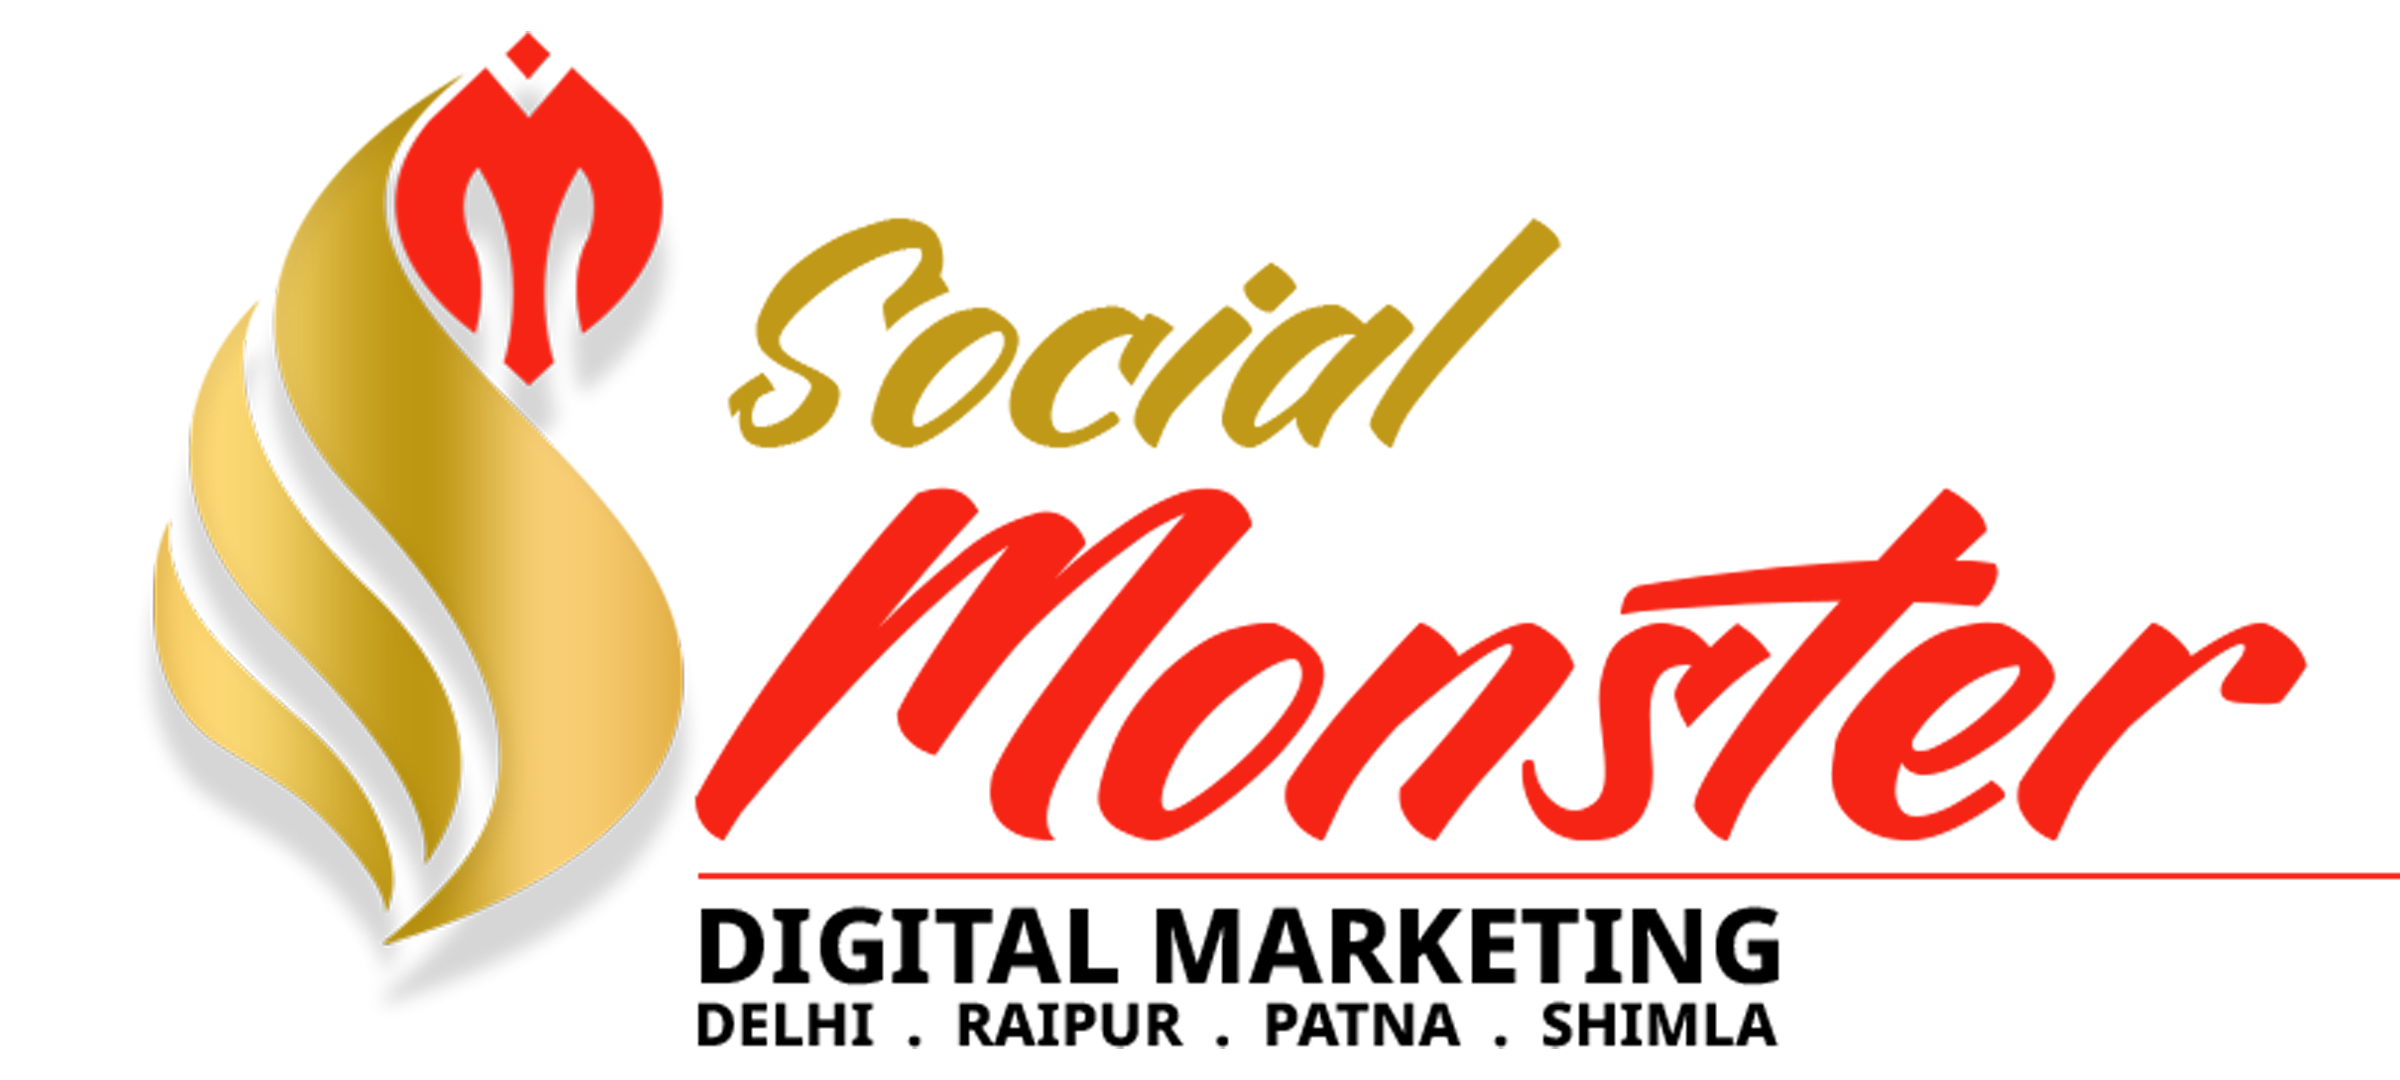 Social Monster